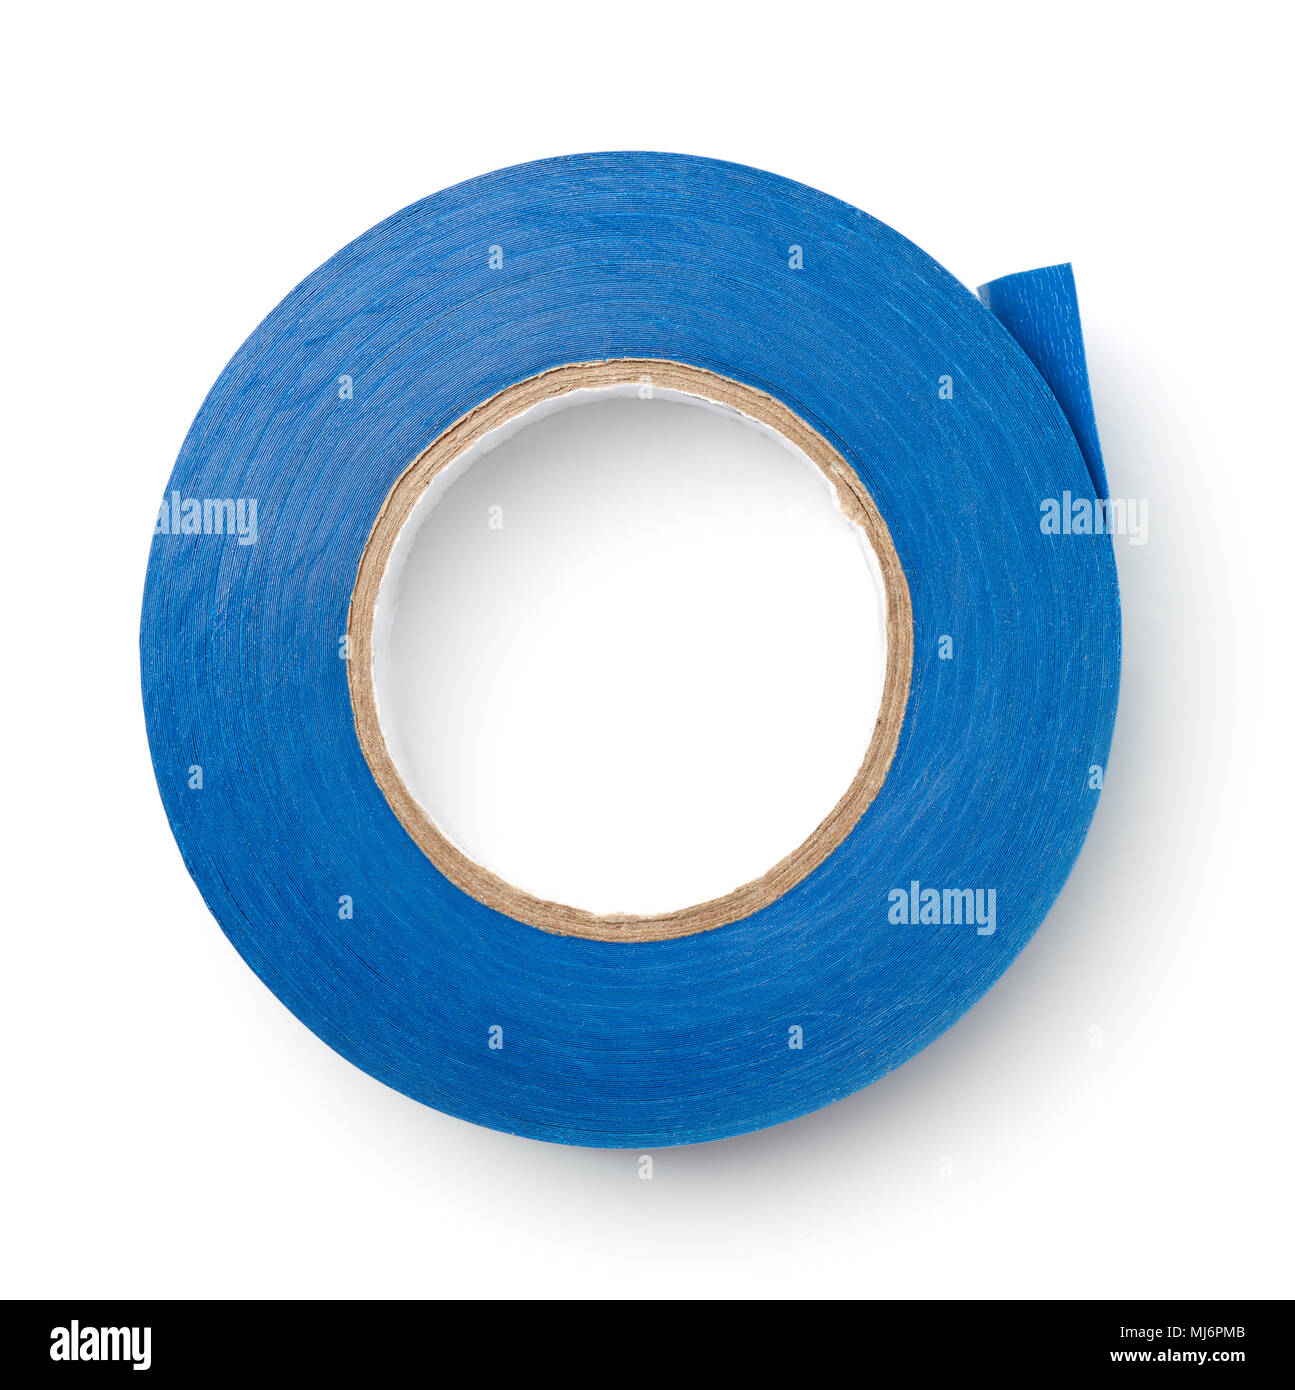 Vue de dessus de la bande de conduit en plastique bleu isolated on white Banque D'Images